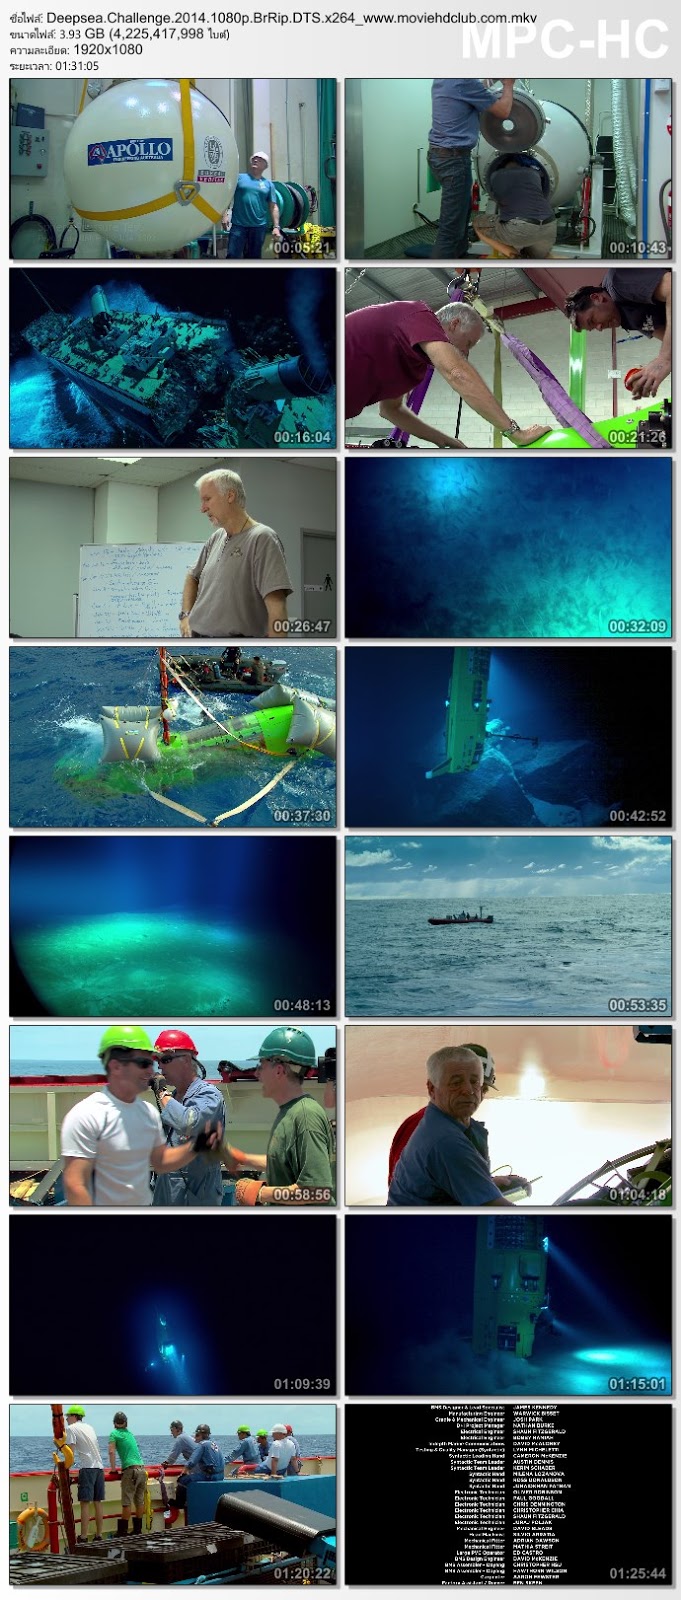 [Mini-HD] Deep Sea Challenge (2014) - ดิ่งระทึกลึกสุดโลก [1080p][เสียง:ไทย 5.1/Eng DTS][ซับ:ไทย/Eng][.MKV][3.94GB] DS_MovieHdClub_SS